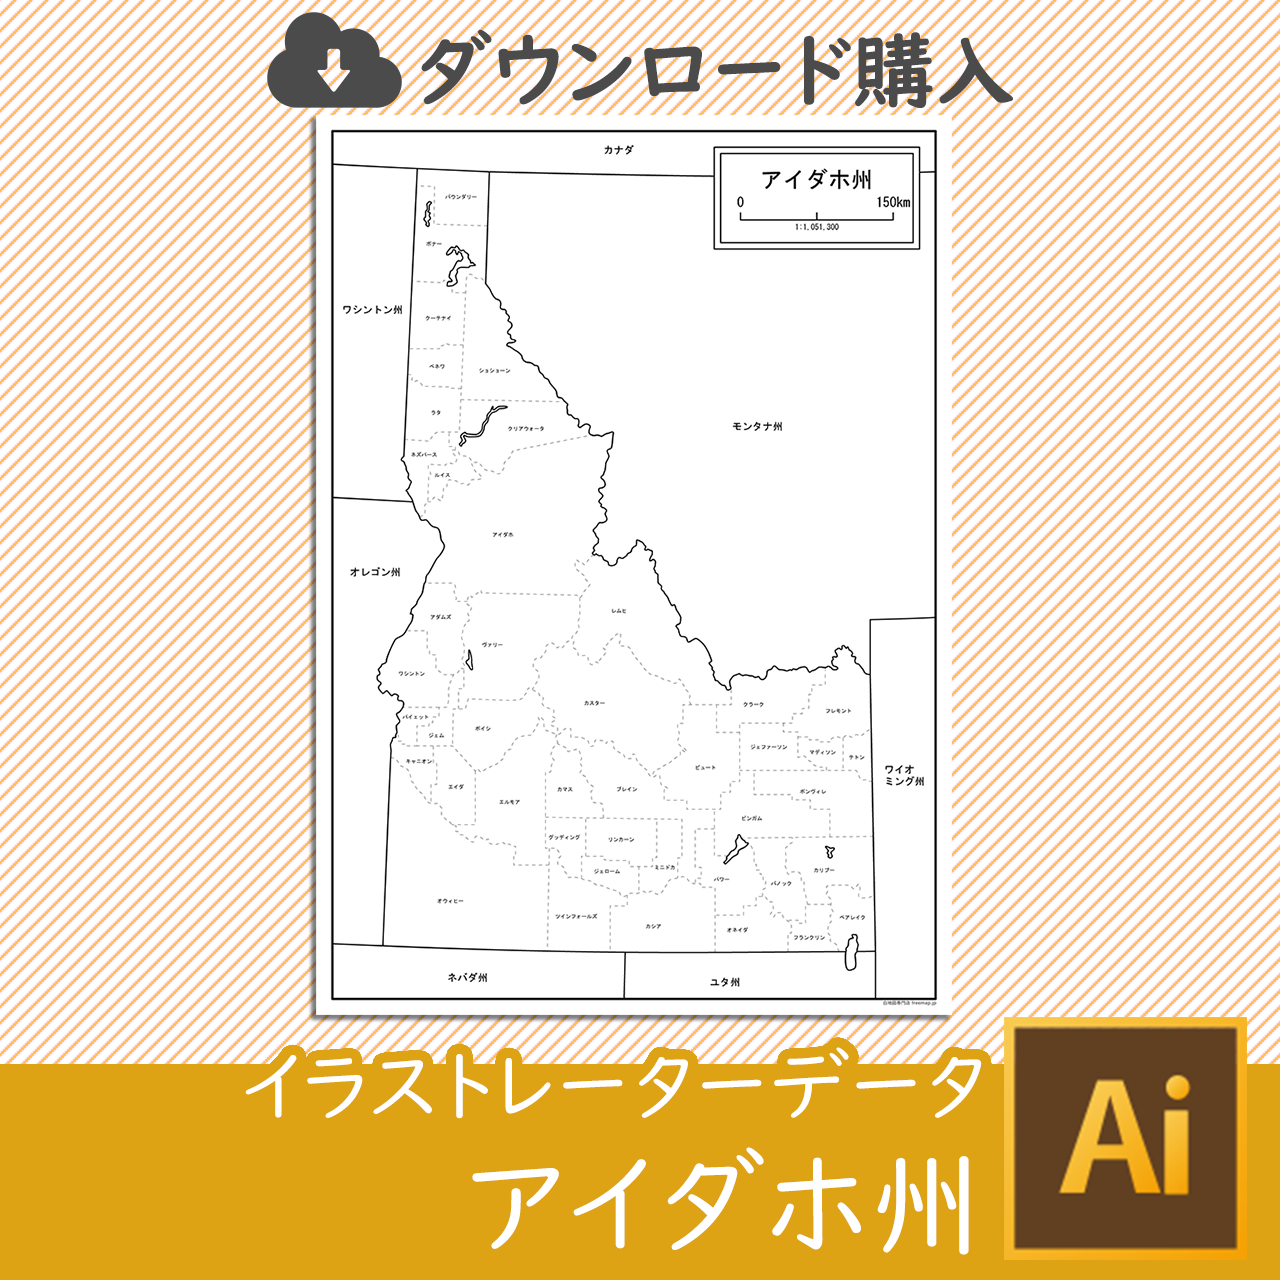 アイダホ州の白地図データのサムネイル画像